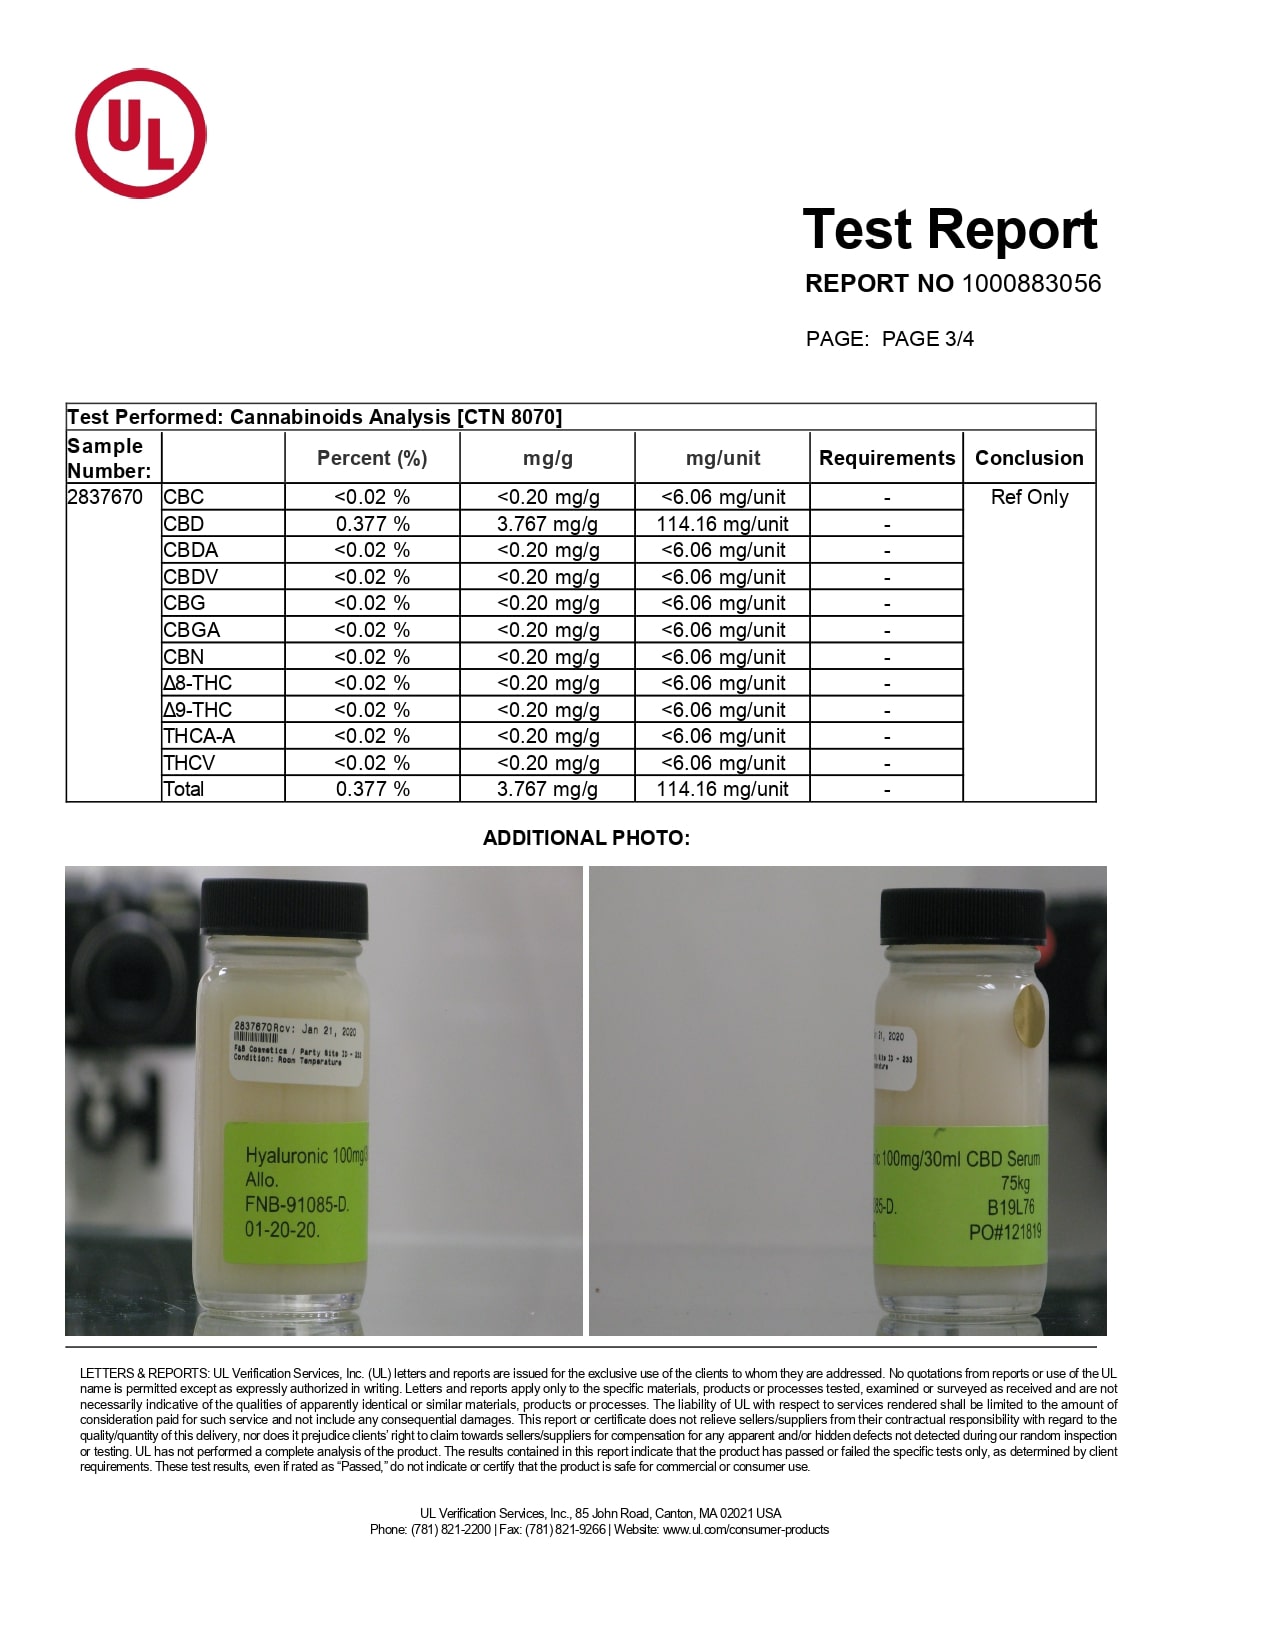 ALLO CBD Topical Hydra Face and Neck Serum Lab Report